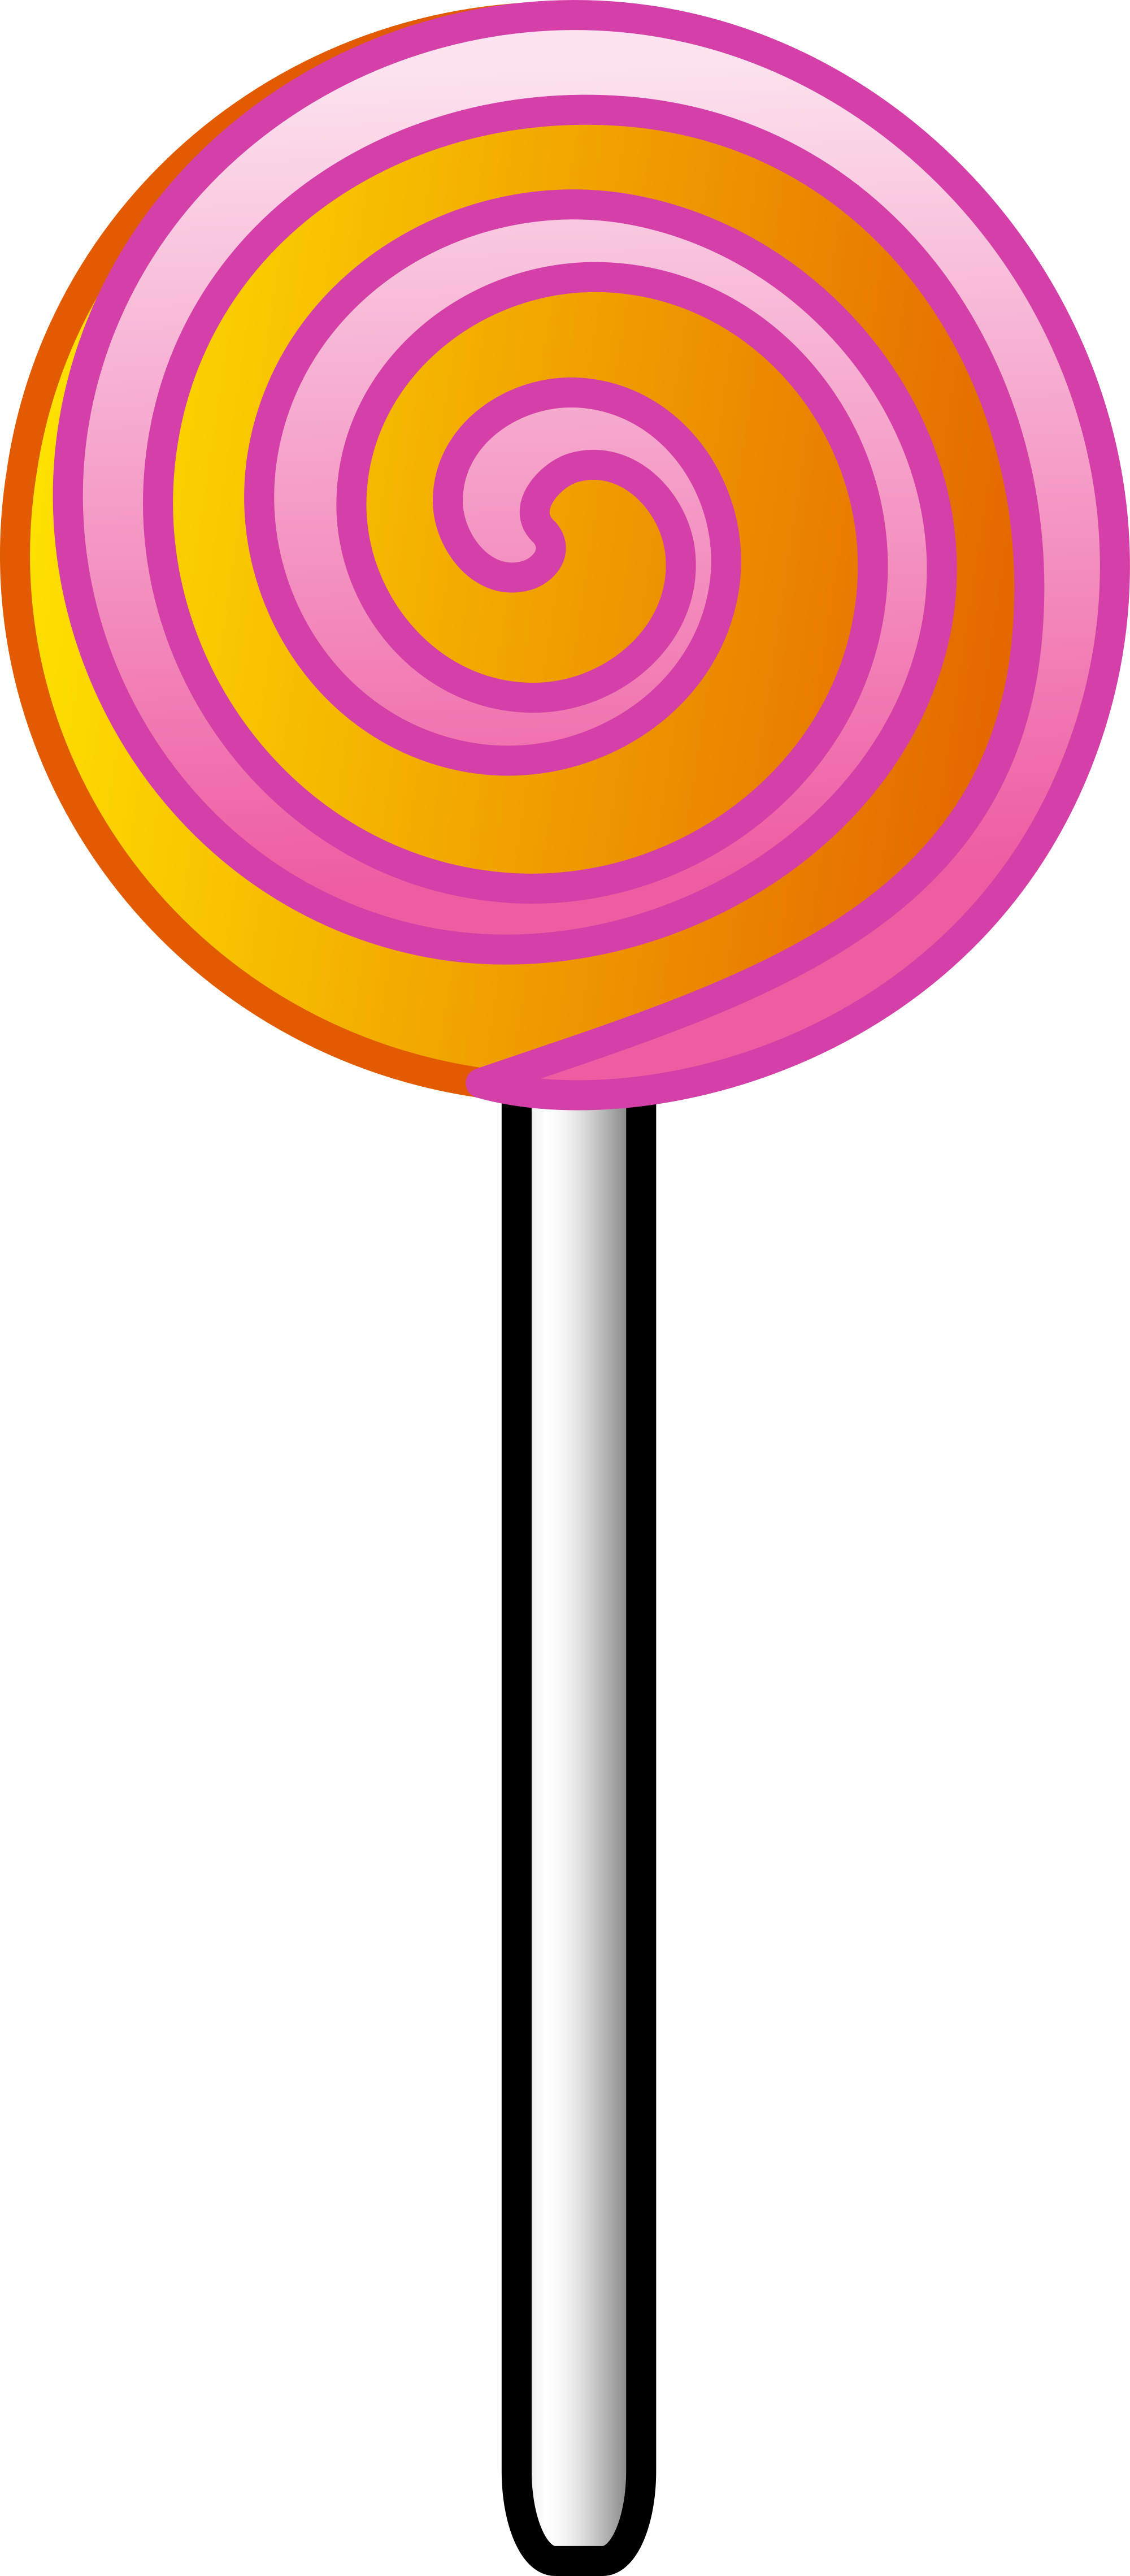 ... Lollipop Clip Art - clipartall ...